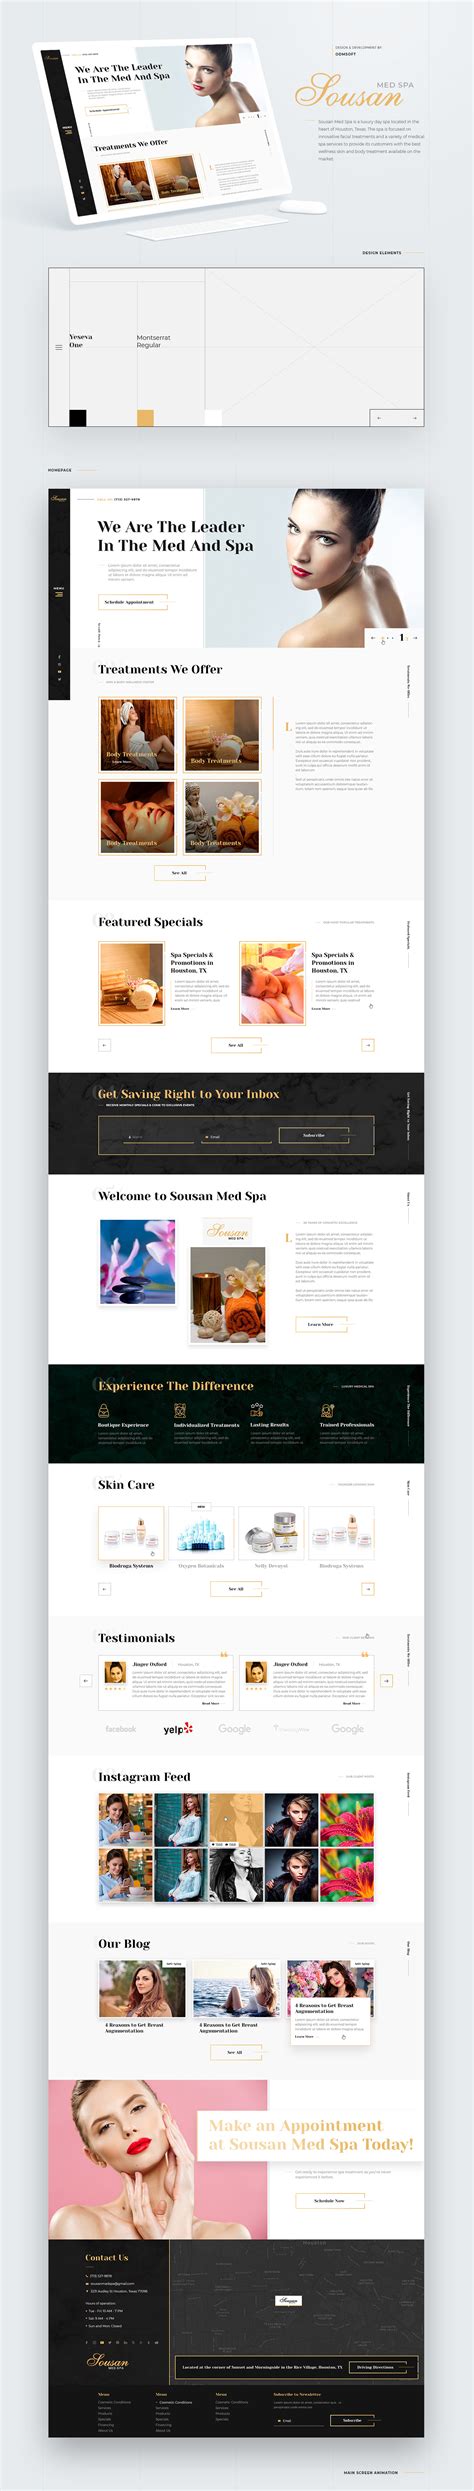 Sousan Med Spa — Day Spa Website Design On Behance